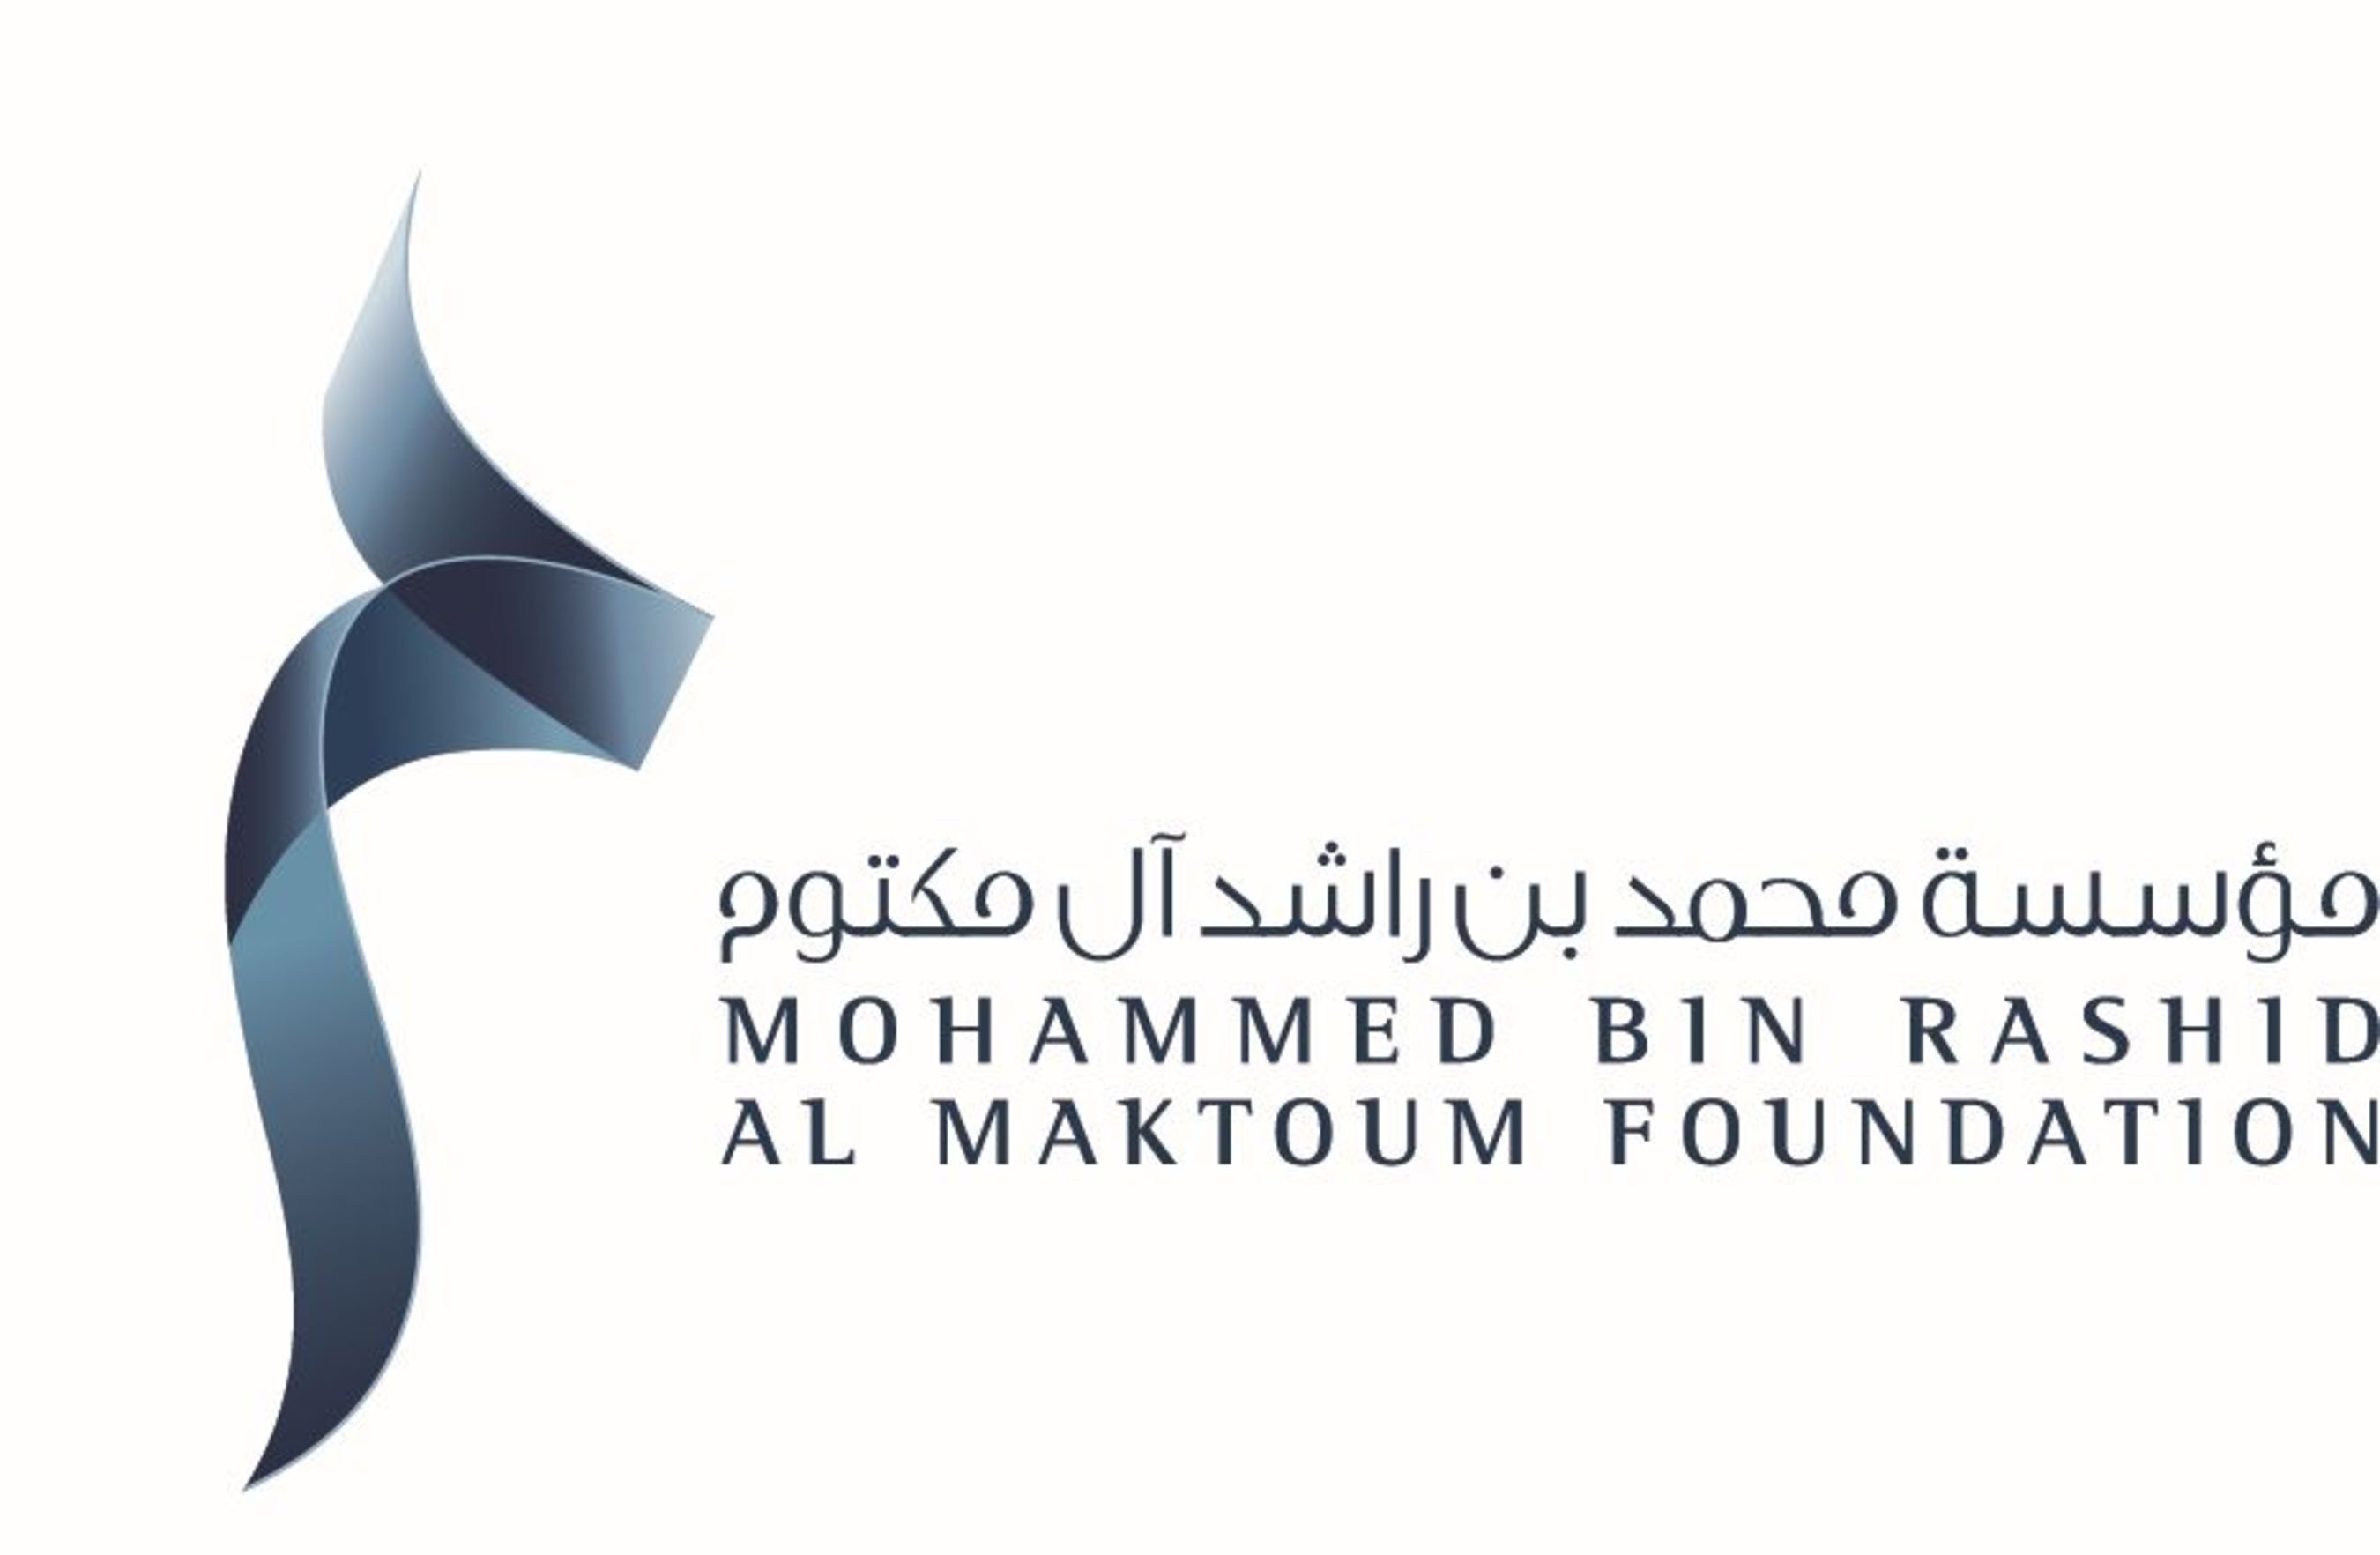 Mohammed Bin Rashid Al Maktoum Foundation Logo. (PRNewsFoto/Mohammed Bin Rashid Al Maktoum) (PRNewsFoto/Mohammed Bin Rashid Al Maktoum)